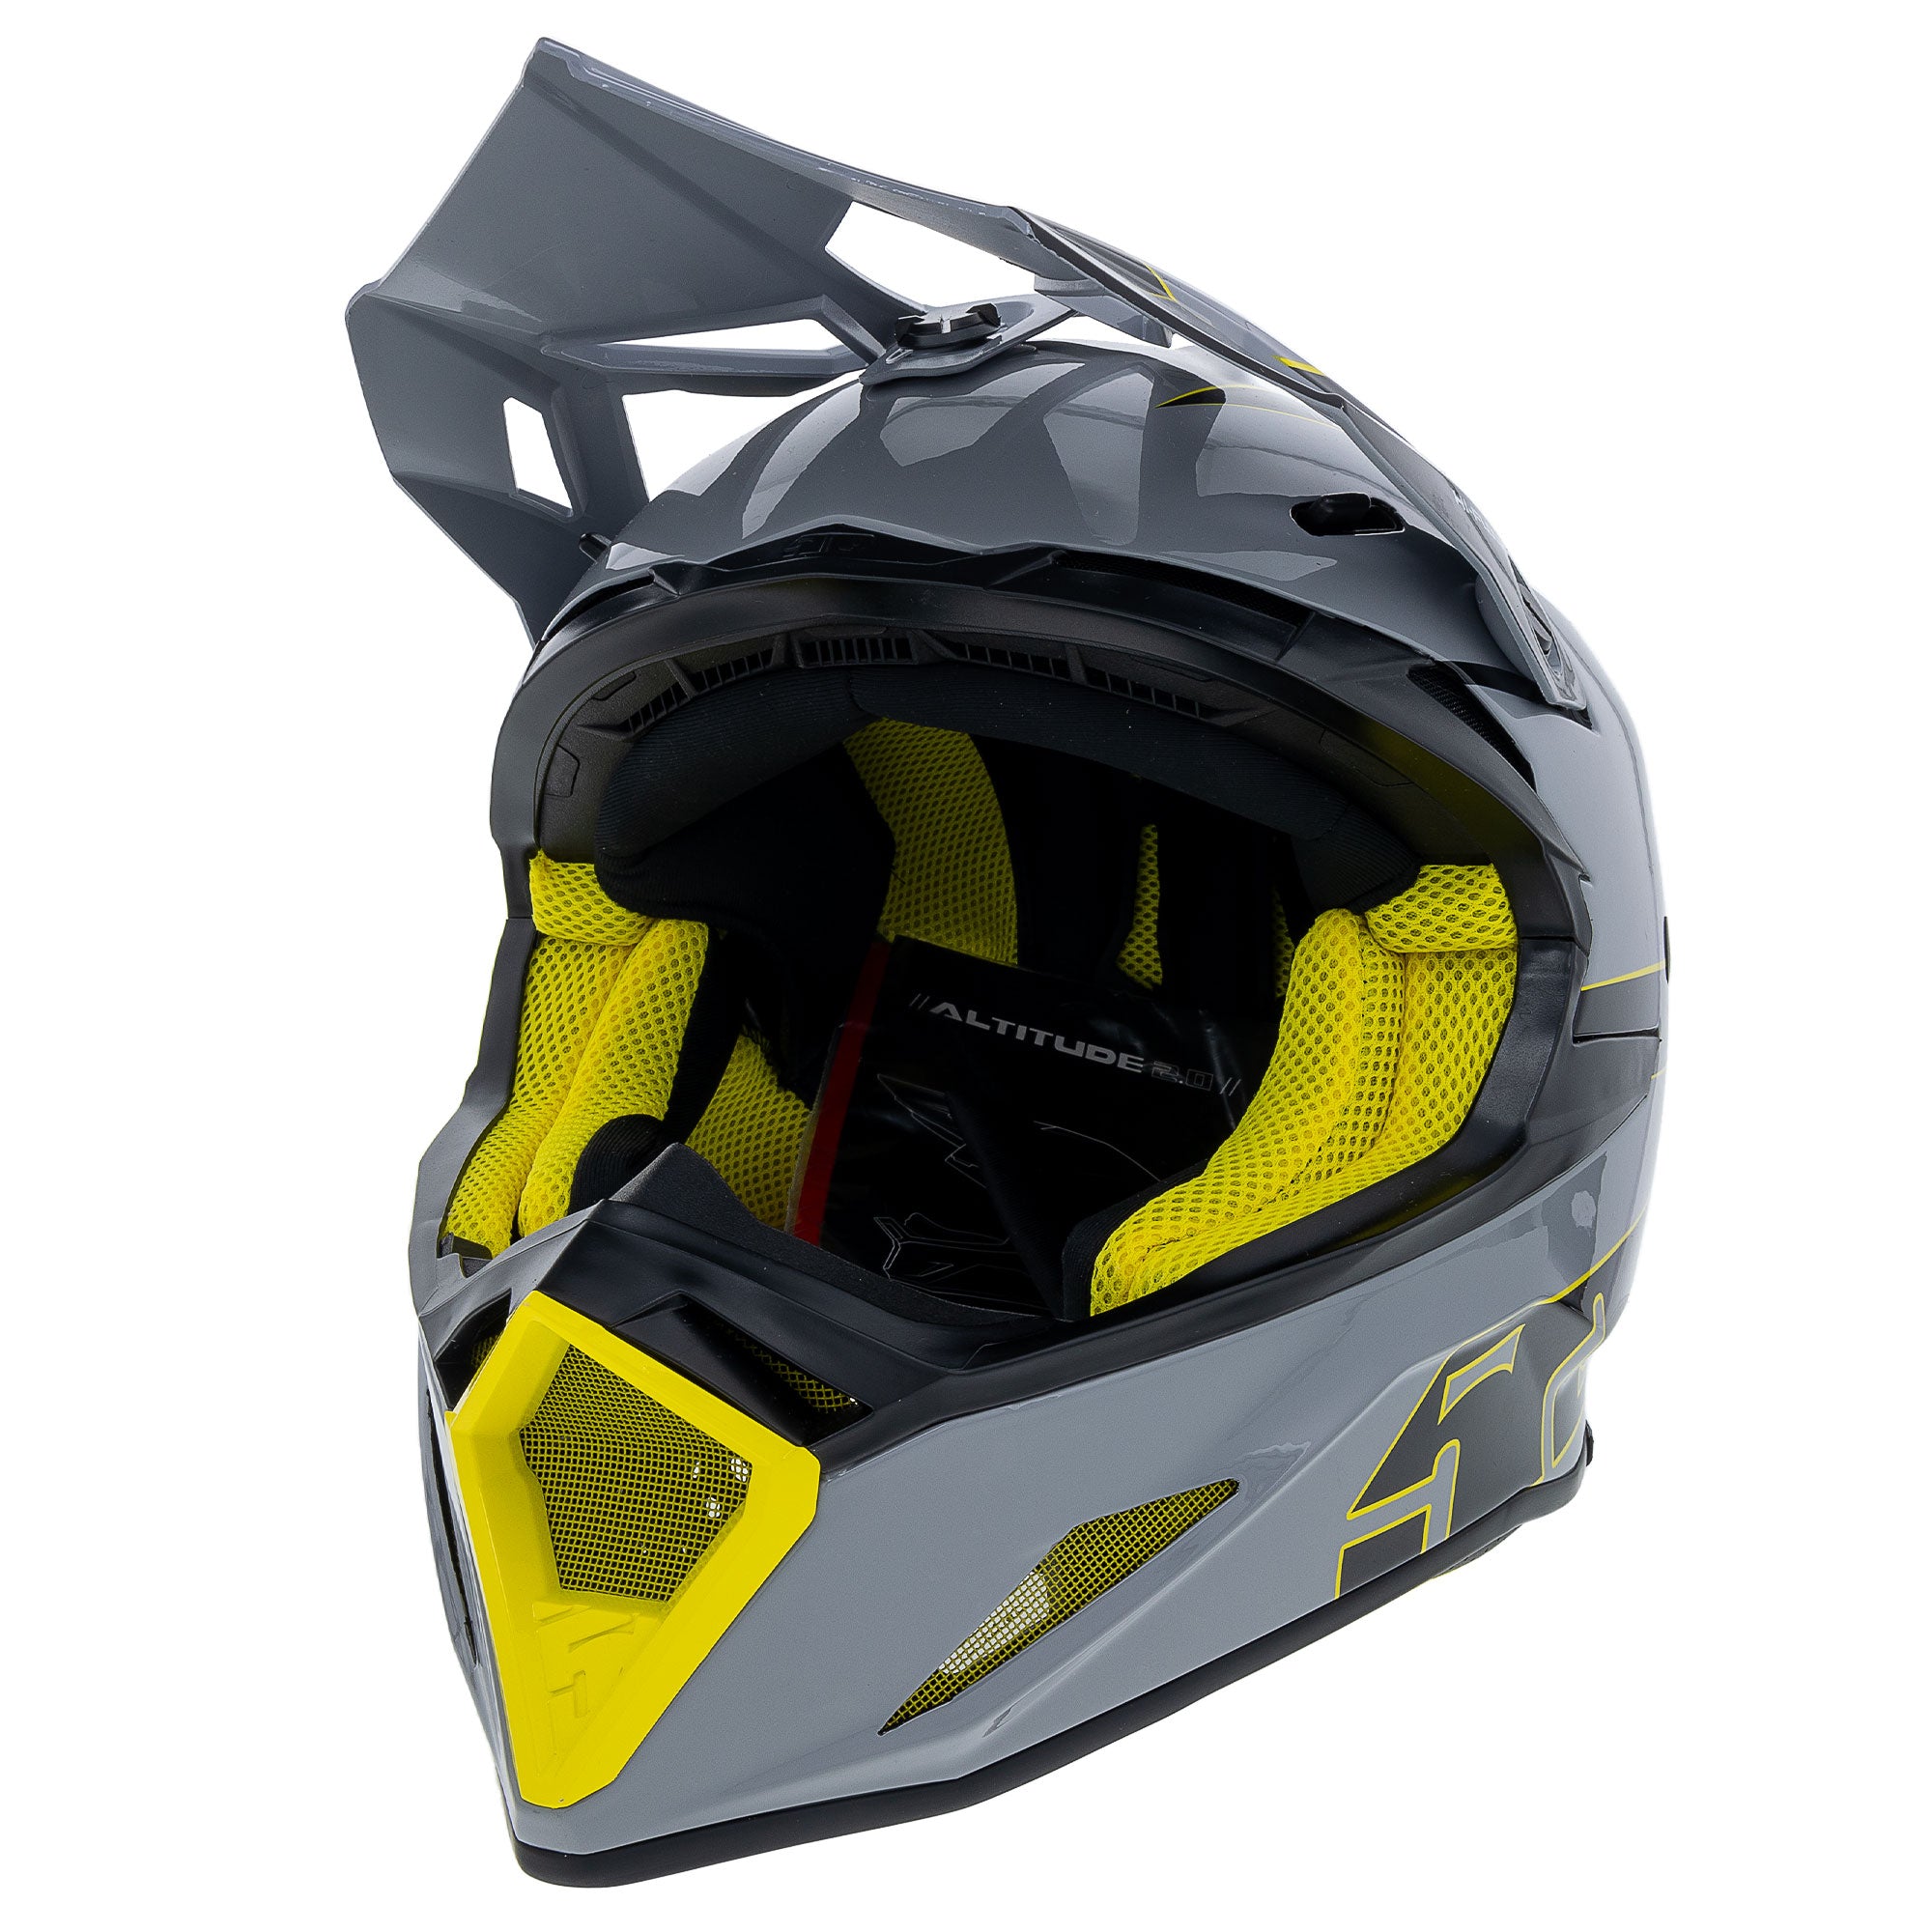 Genuine OEM 509 Altitude 2.0 Offroad Helmet